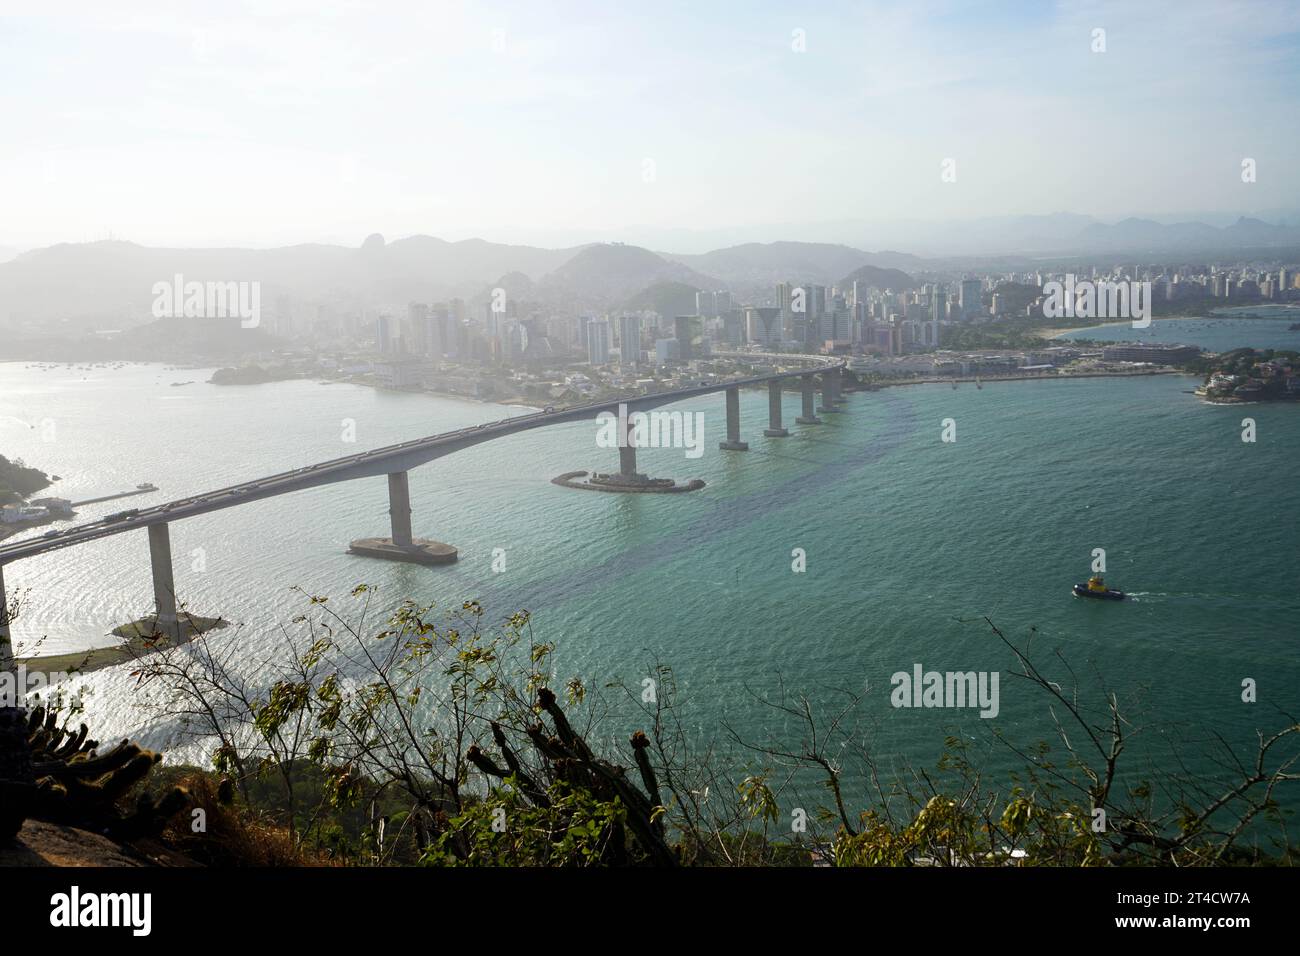 Vista aerea della città di Vitoria con il Ponte di Terceira, Espirito Santo, Brasile Foto Stock